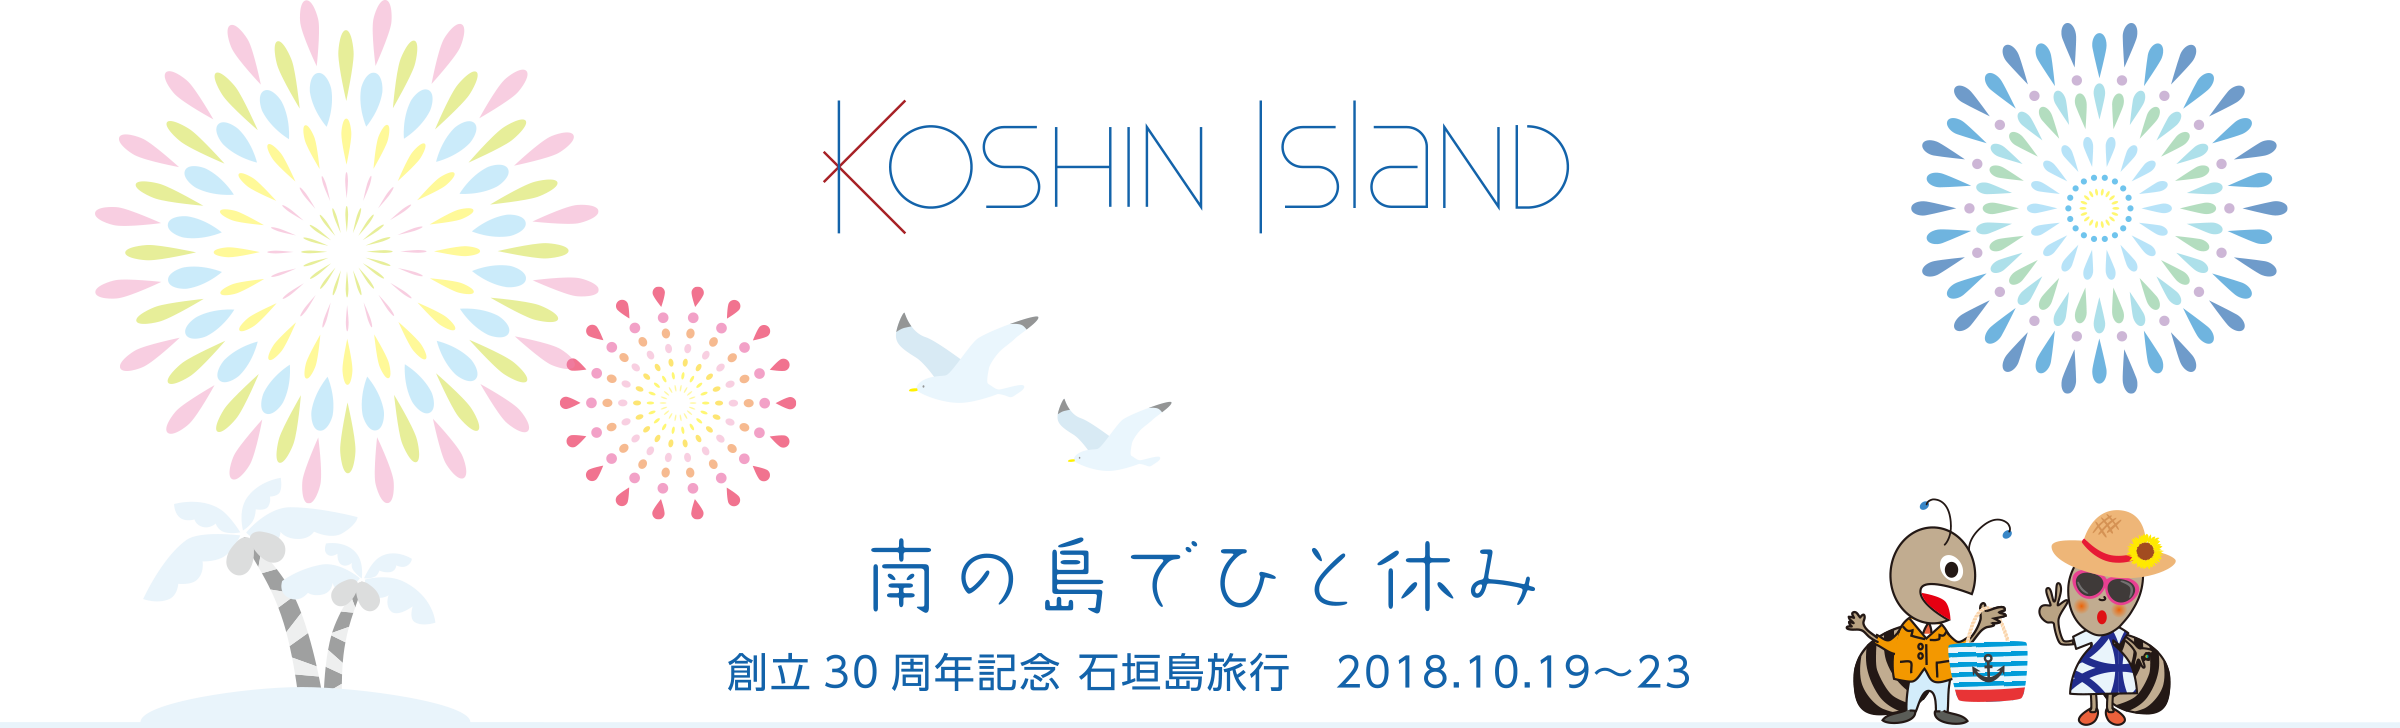 南の島でひと休み 創立30周年記念 石垣島旅行 2018.10.19〜23 | KOSHIN ISLAND